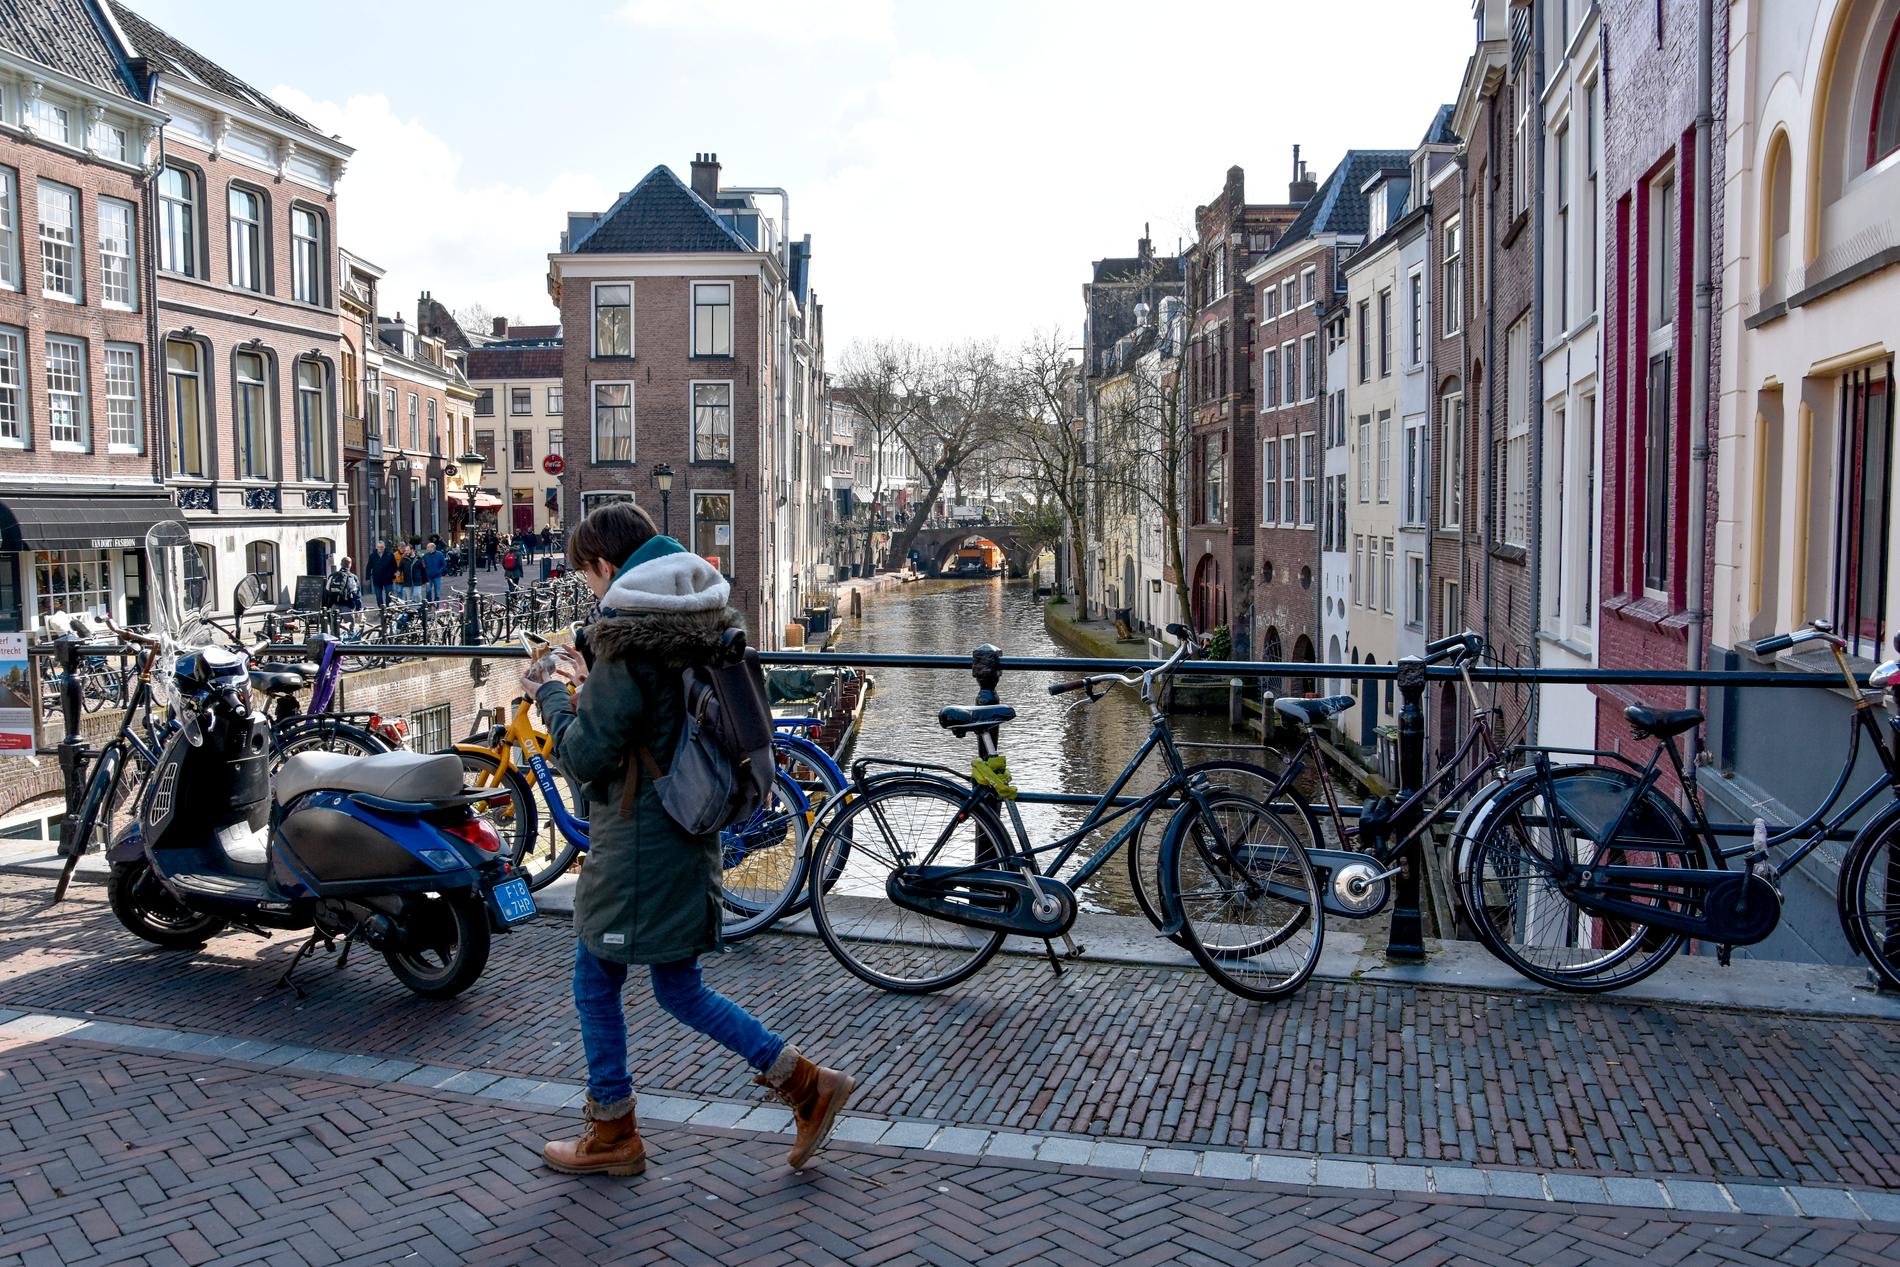 Utrecht är en elegant universitetsstad i Nederländerna, med typiska kanaler och småbutiker. Staden tillhör de rikaste områdena i hela Europa.